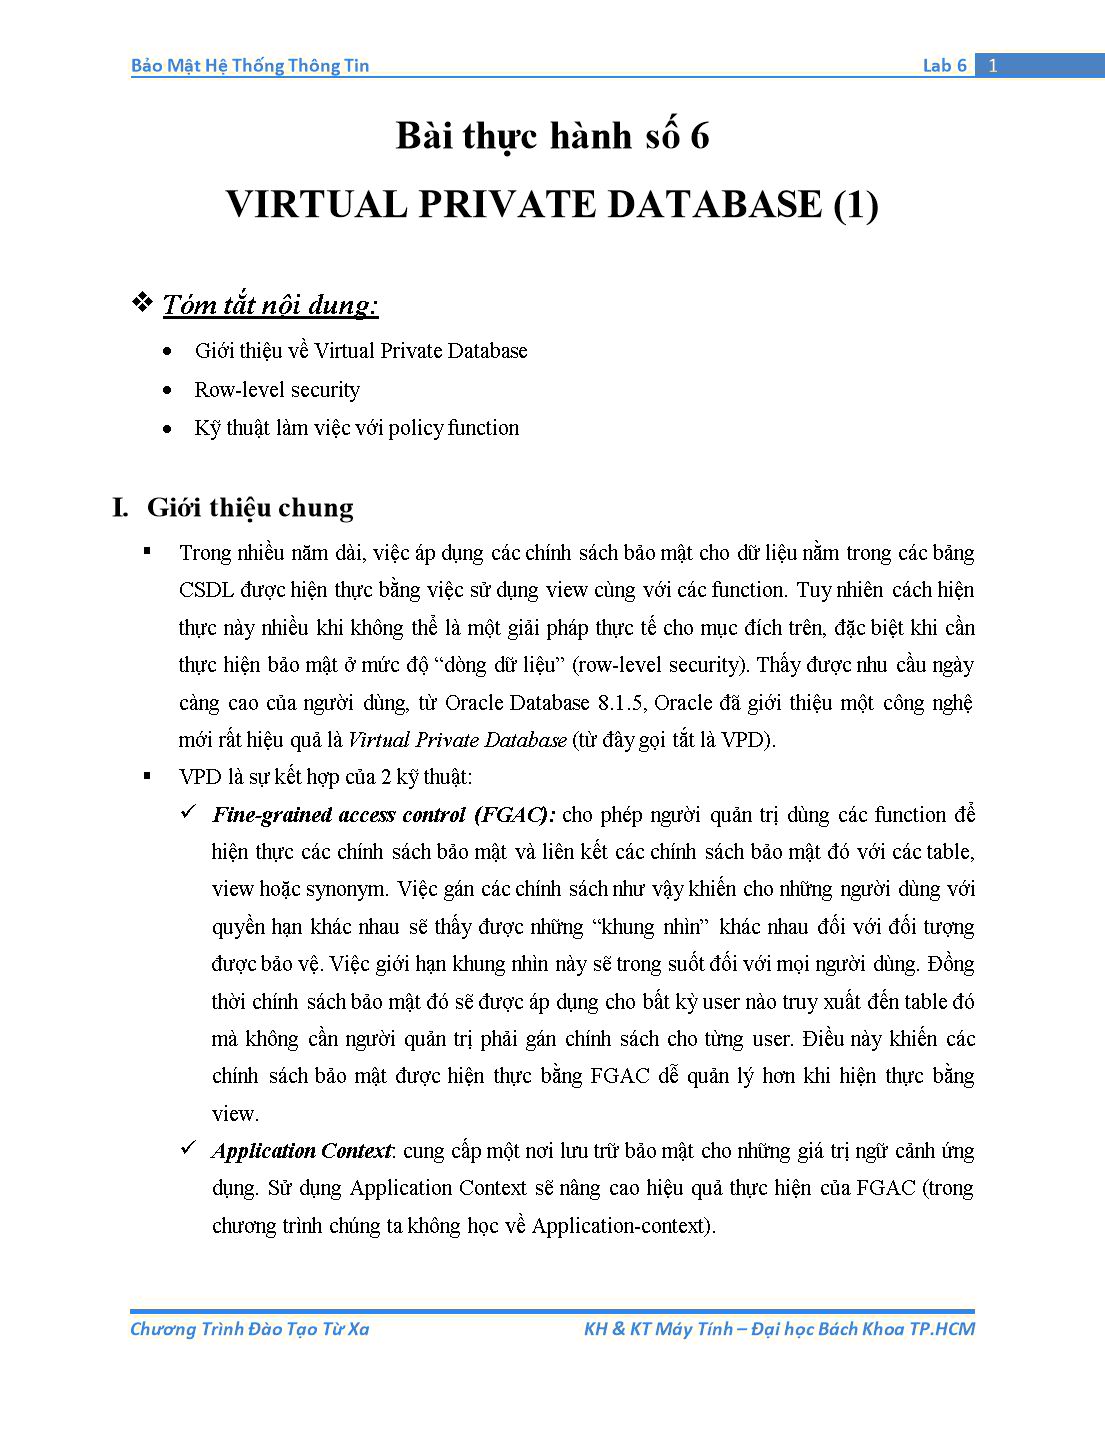 Tài liệu thực hành Bảo mật hệ thống thông tin - Bài thực hành số 6: Virtual Private Database (Phần 1) trang 1